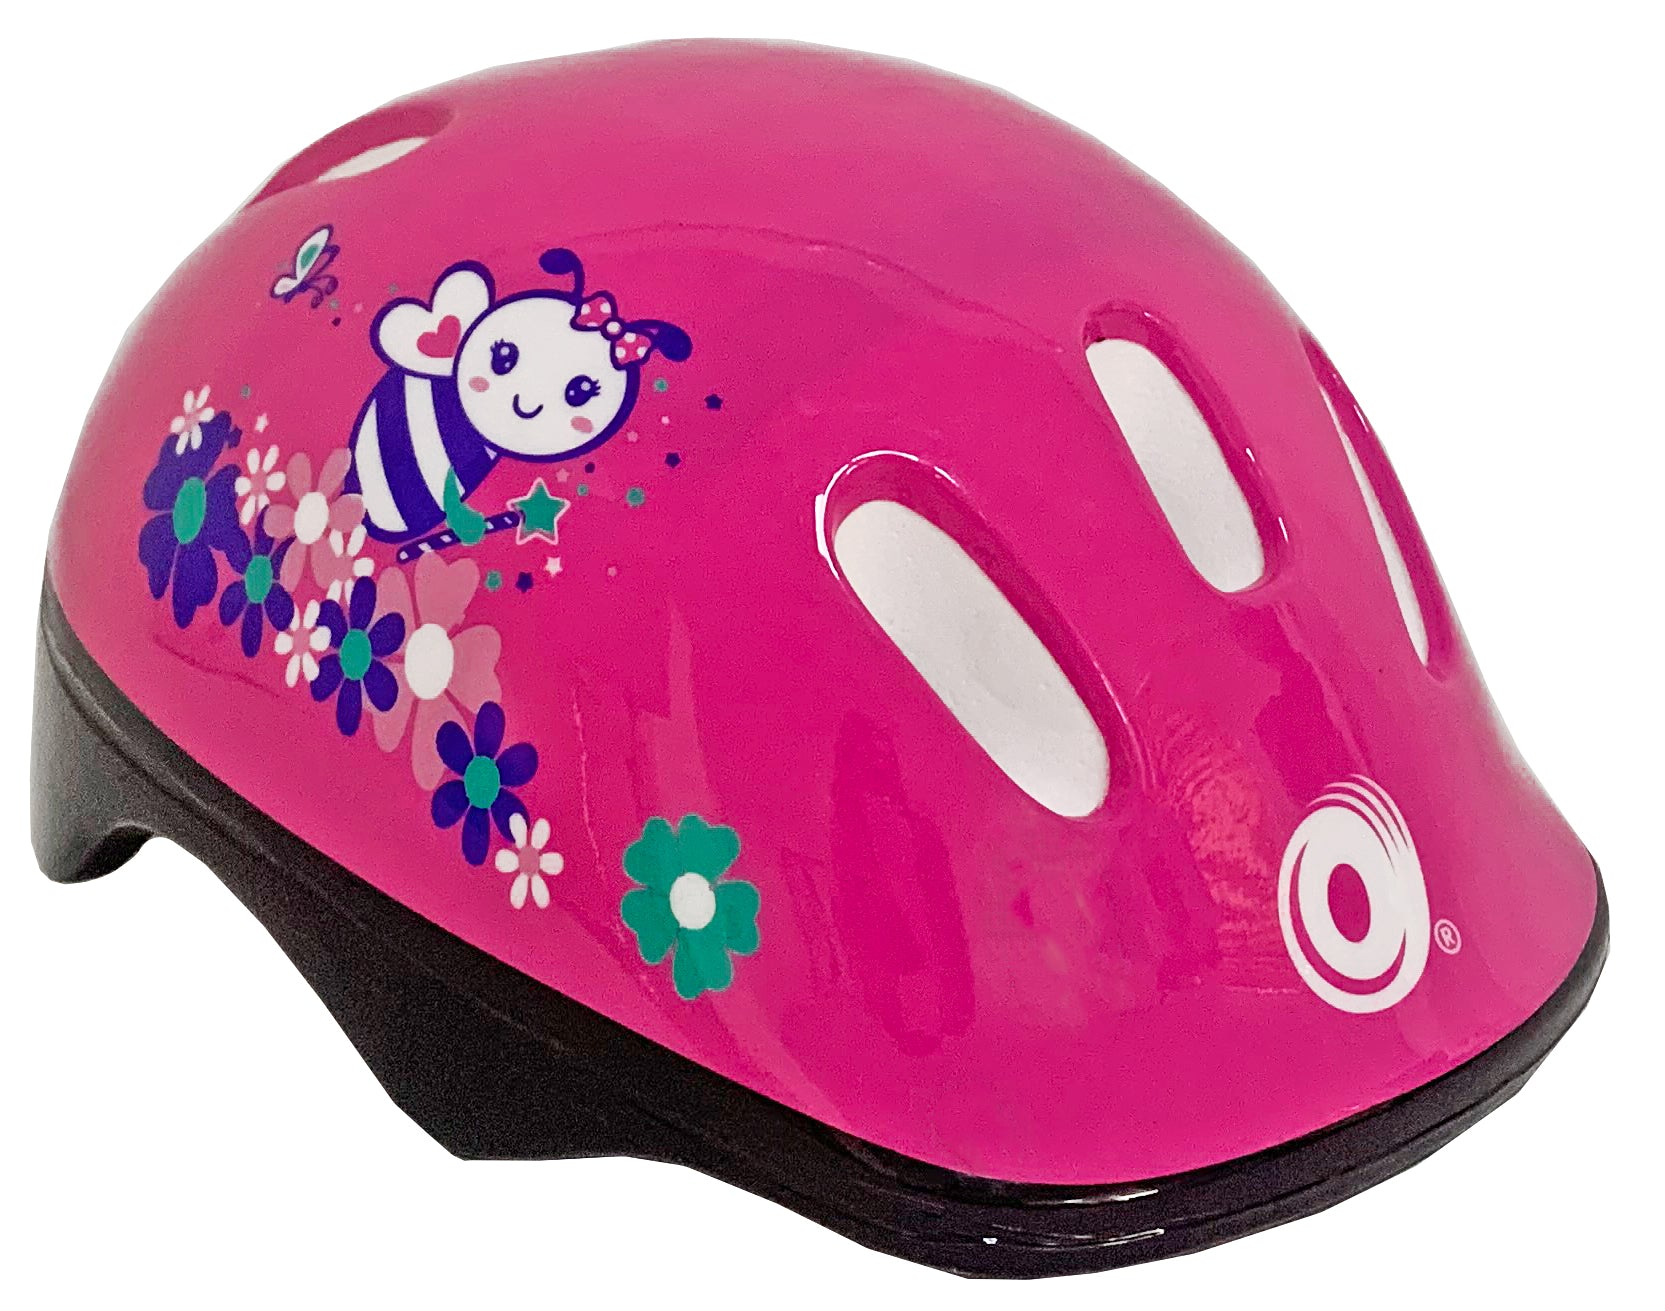 10" Avigo Oh La La Bike with Helmet